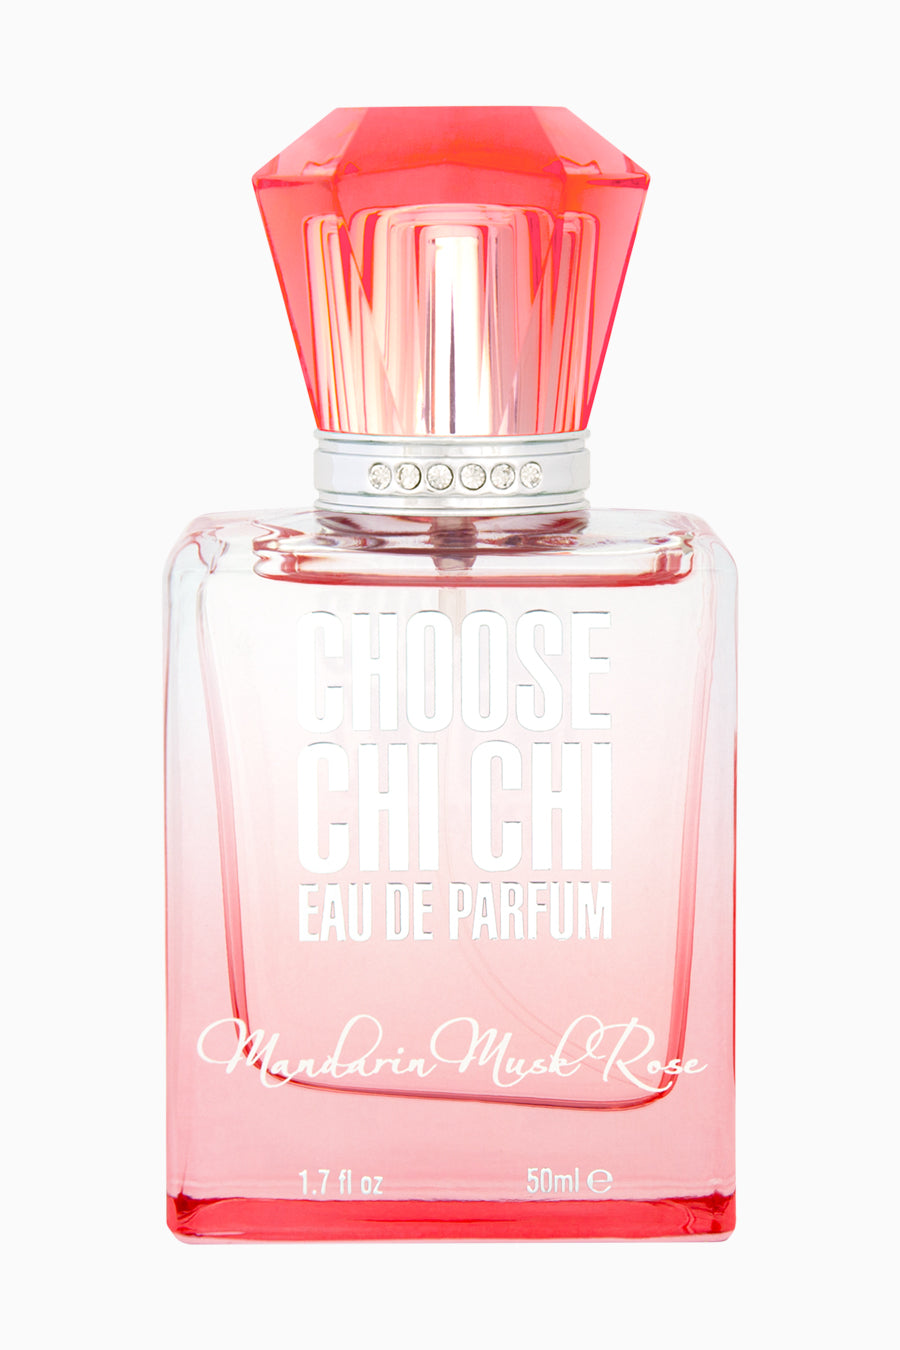 mandarin-musk-rose-eau-de-parfum